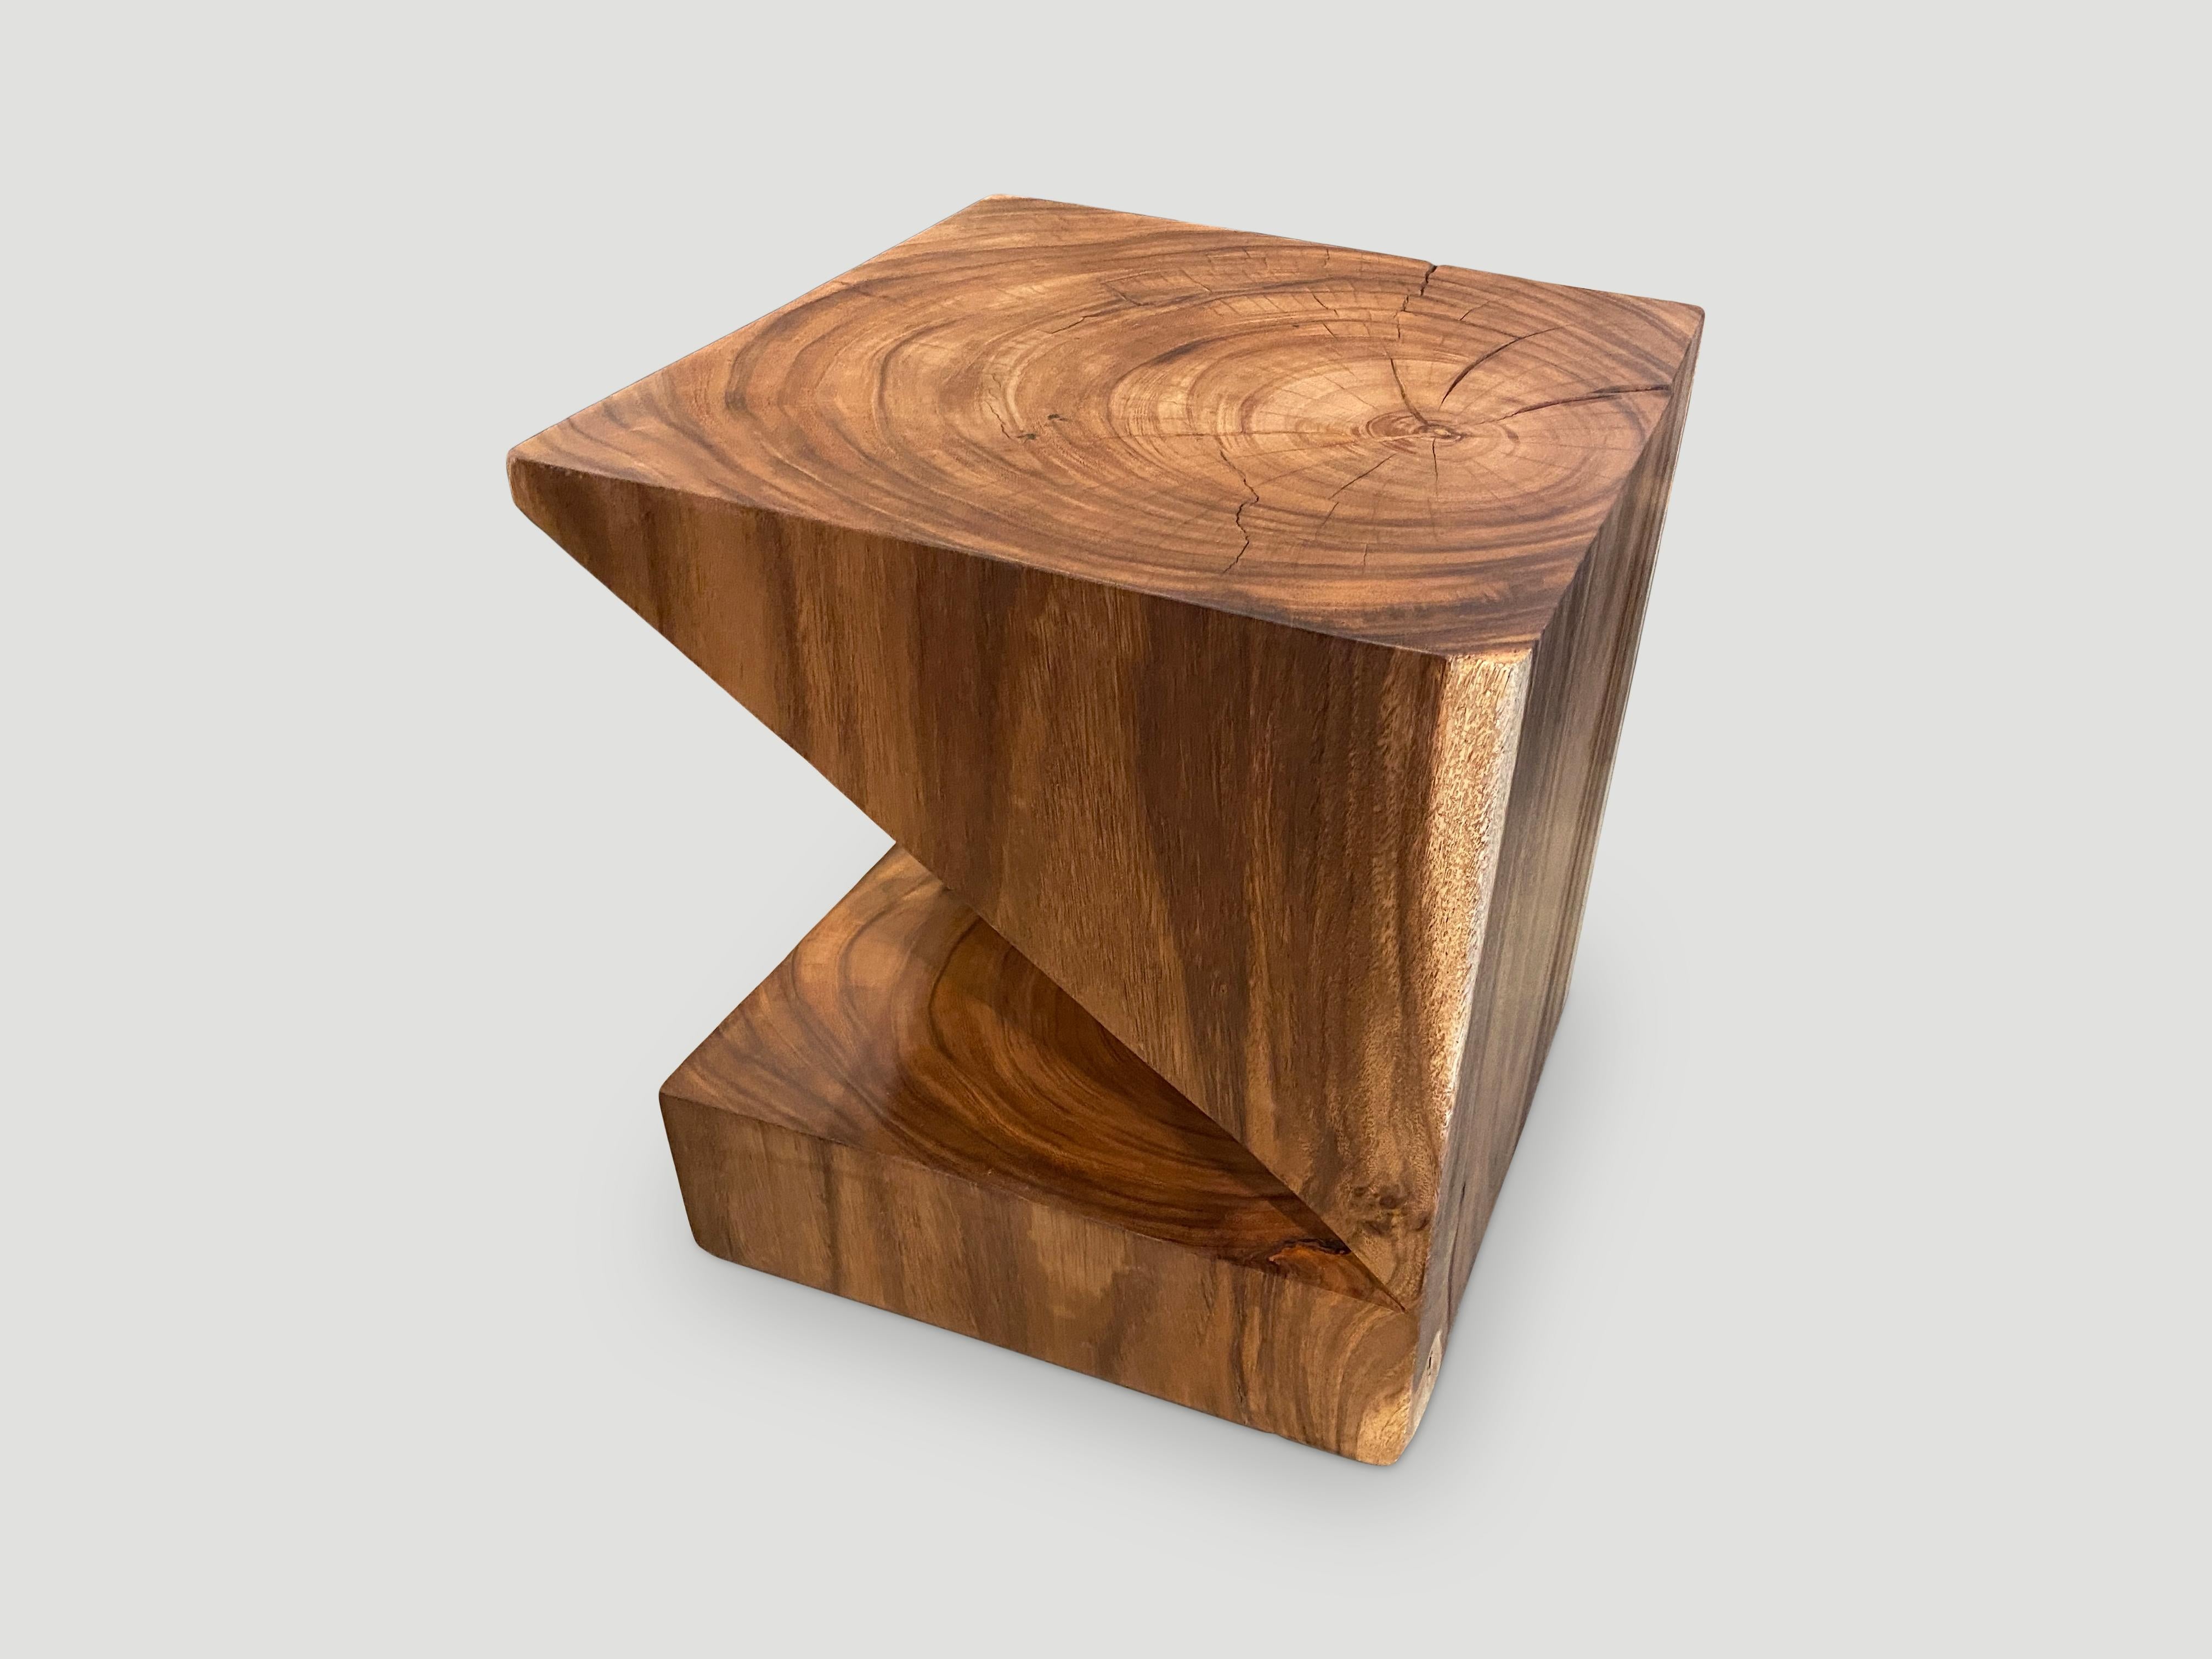 Table d'appoint en bois de suar massif récupéré avec une finition à l'huile naturelle révélant le magnifique grain du bois. Inspiré par l'art du pliage du papier qui est souvent associé à la culture japonaise. Montré en naturel et également